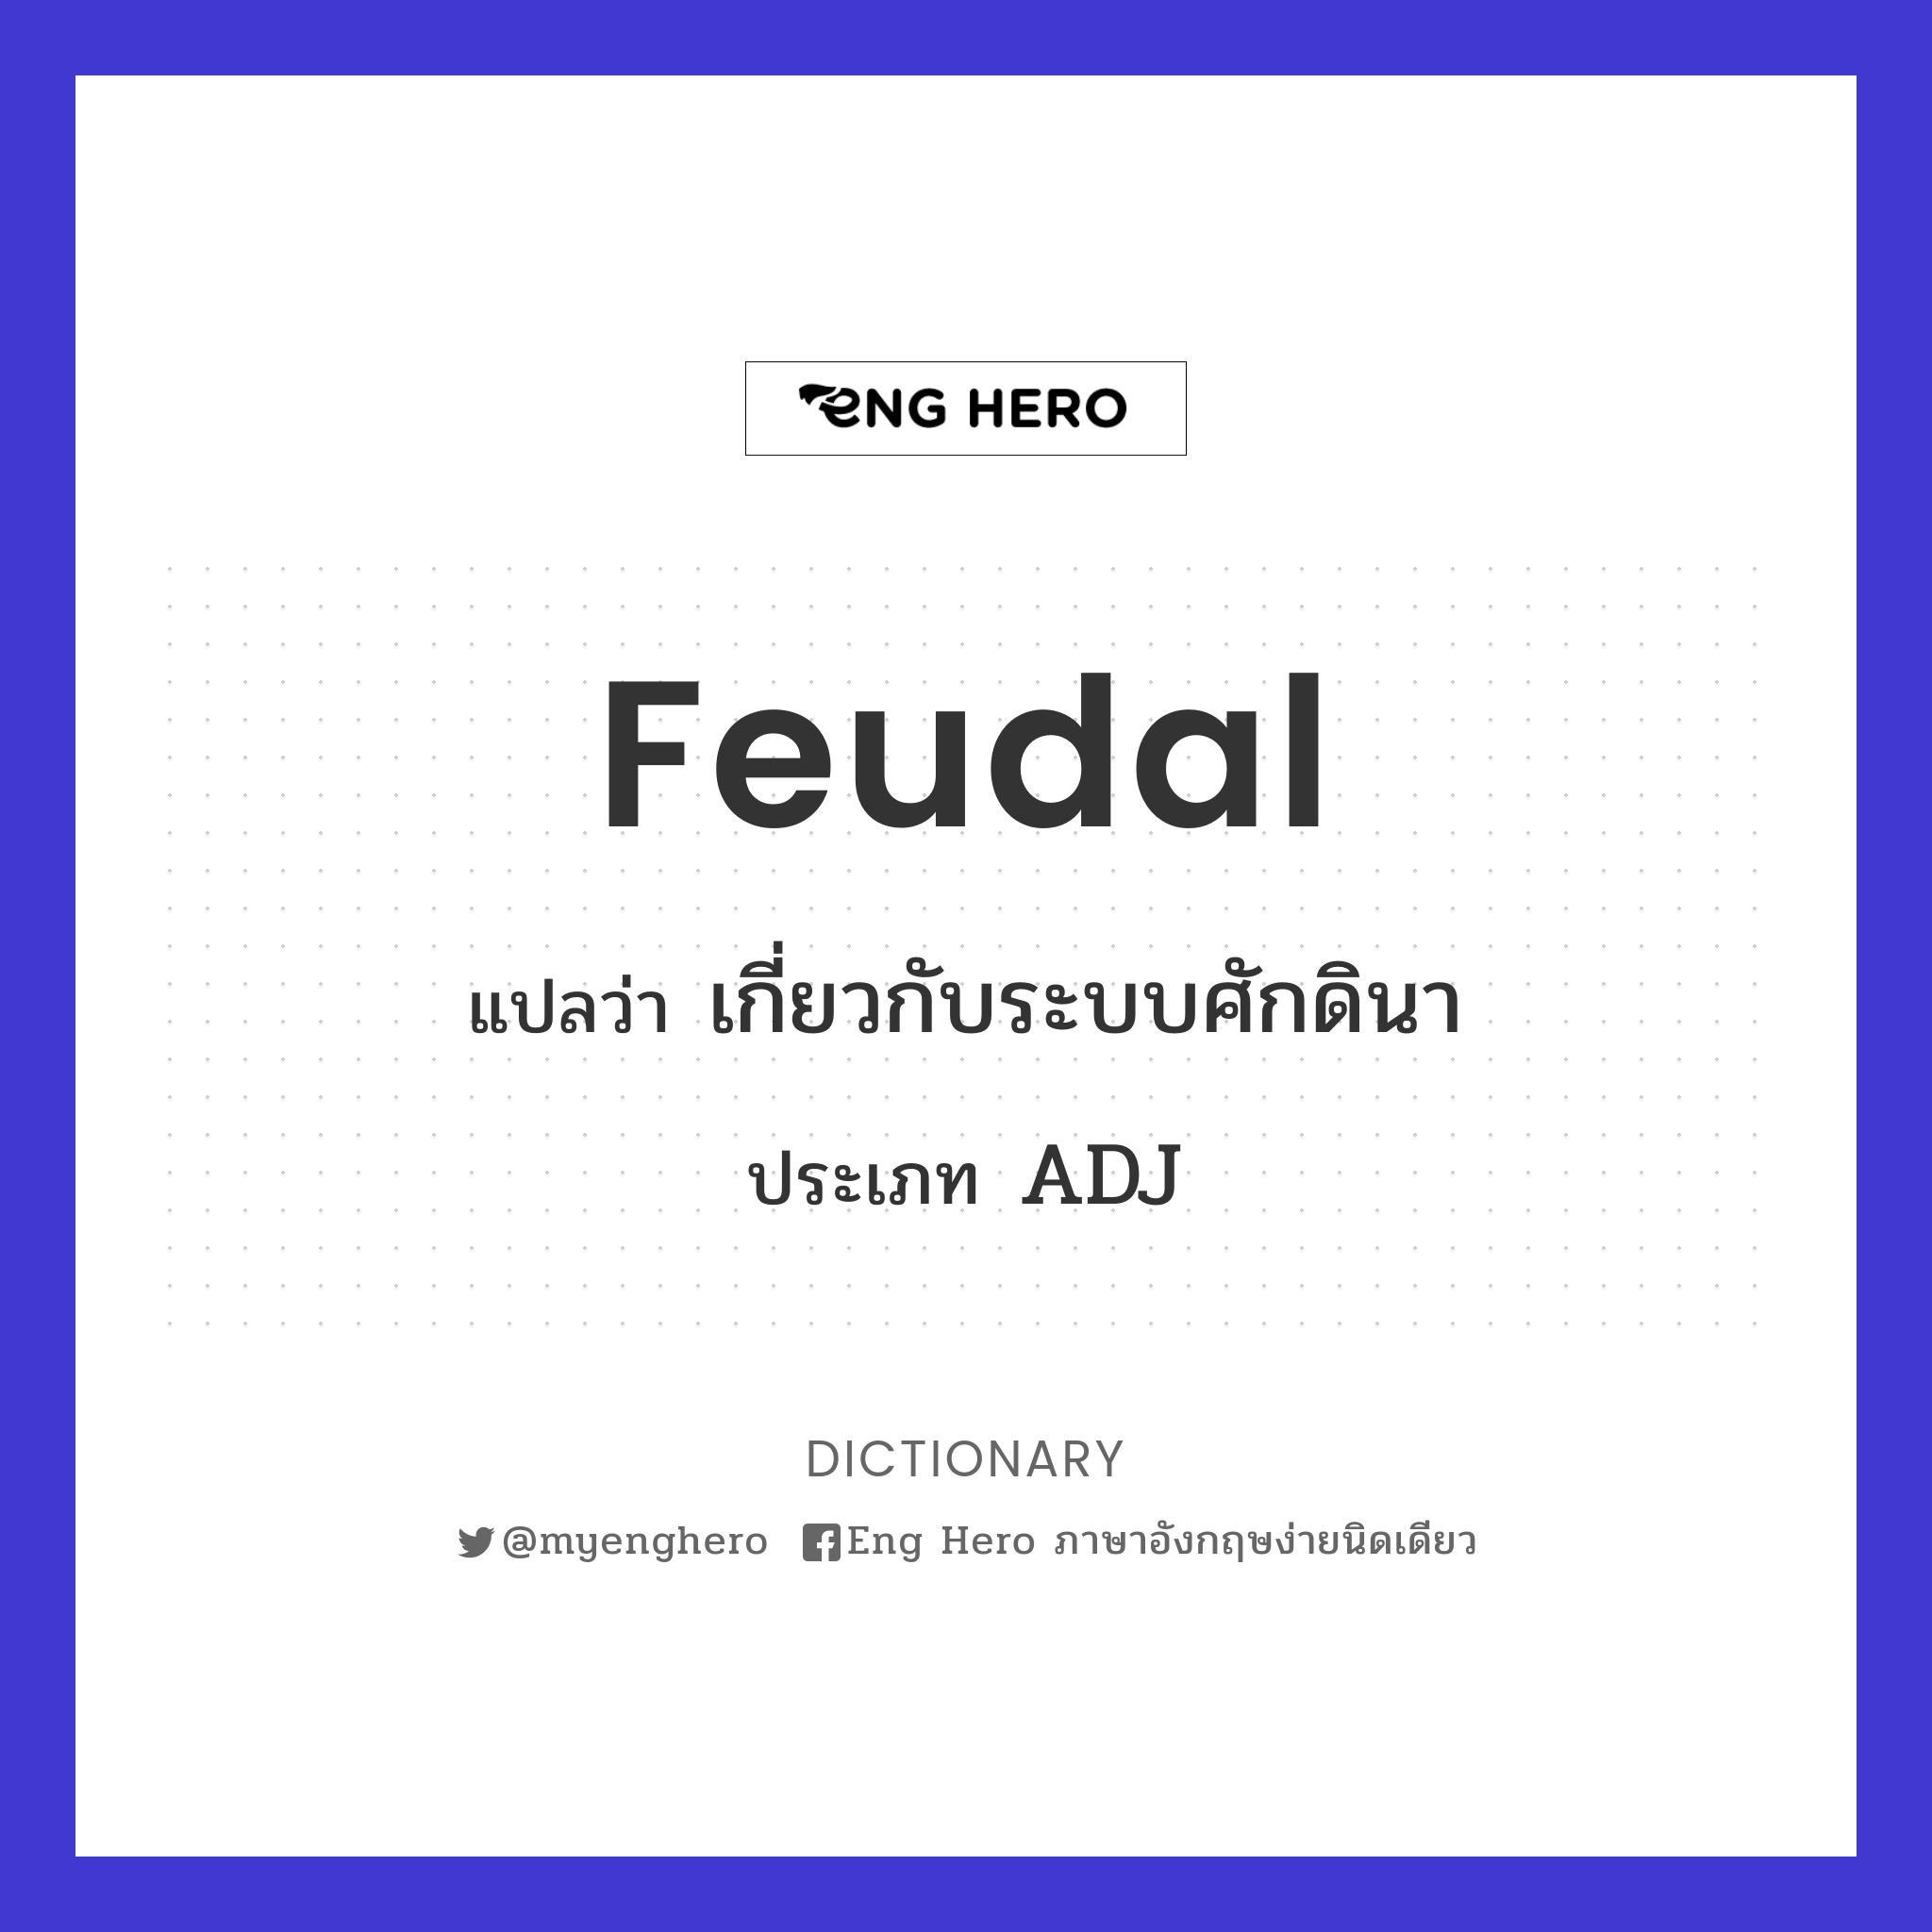 feudal